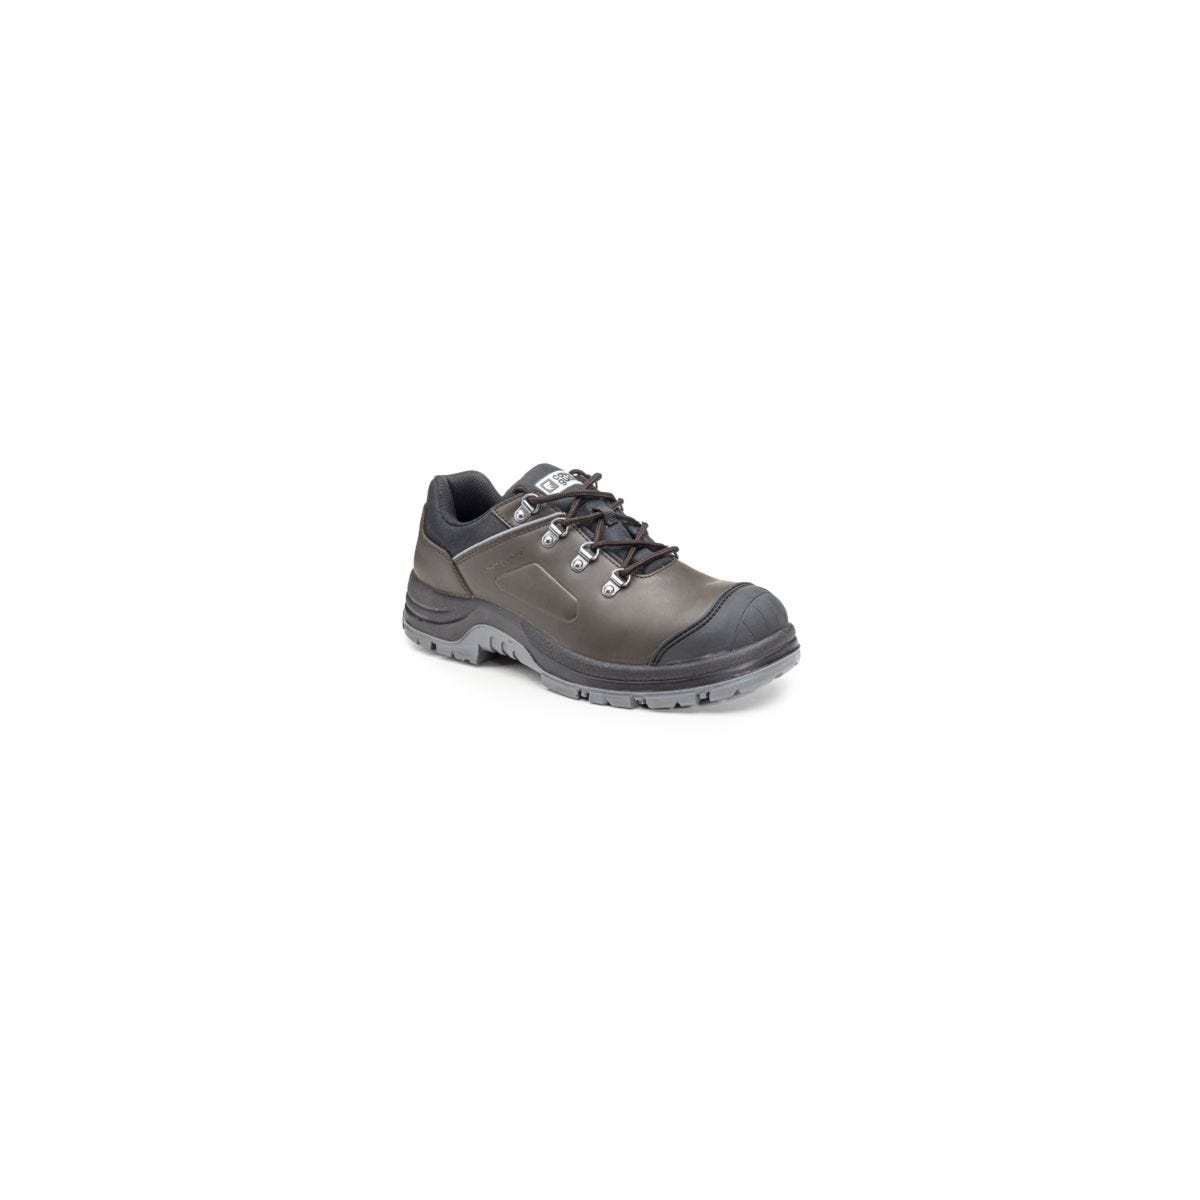 Chaussures de sécurité S3 FLINT Basse Croute de cuir Marron - COVERGUARD - Taille 42 0